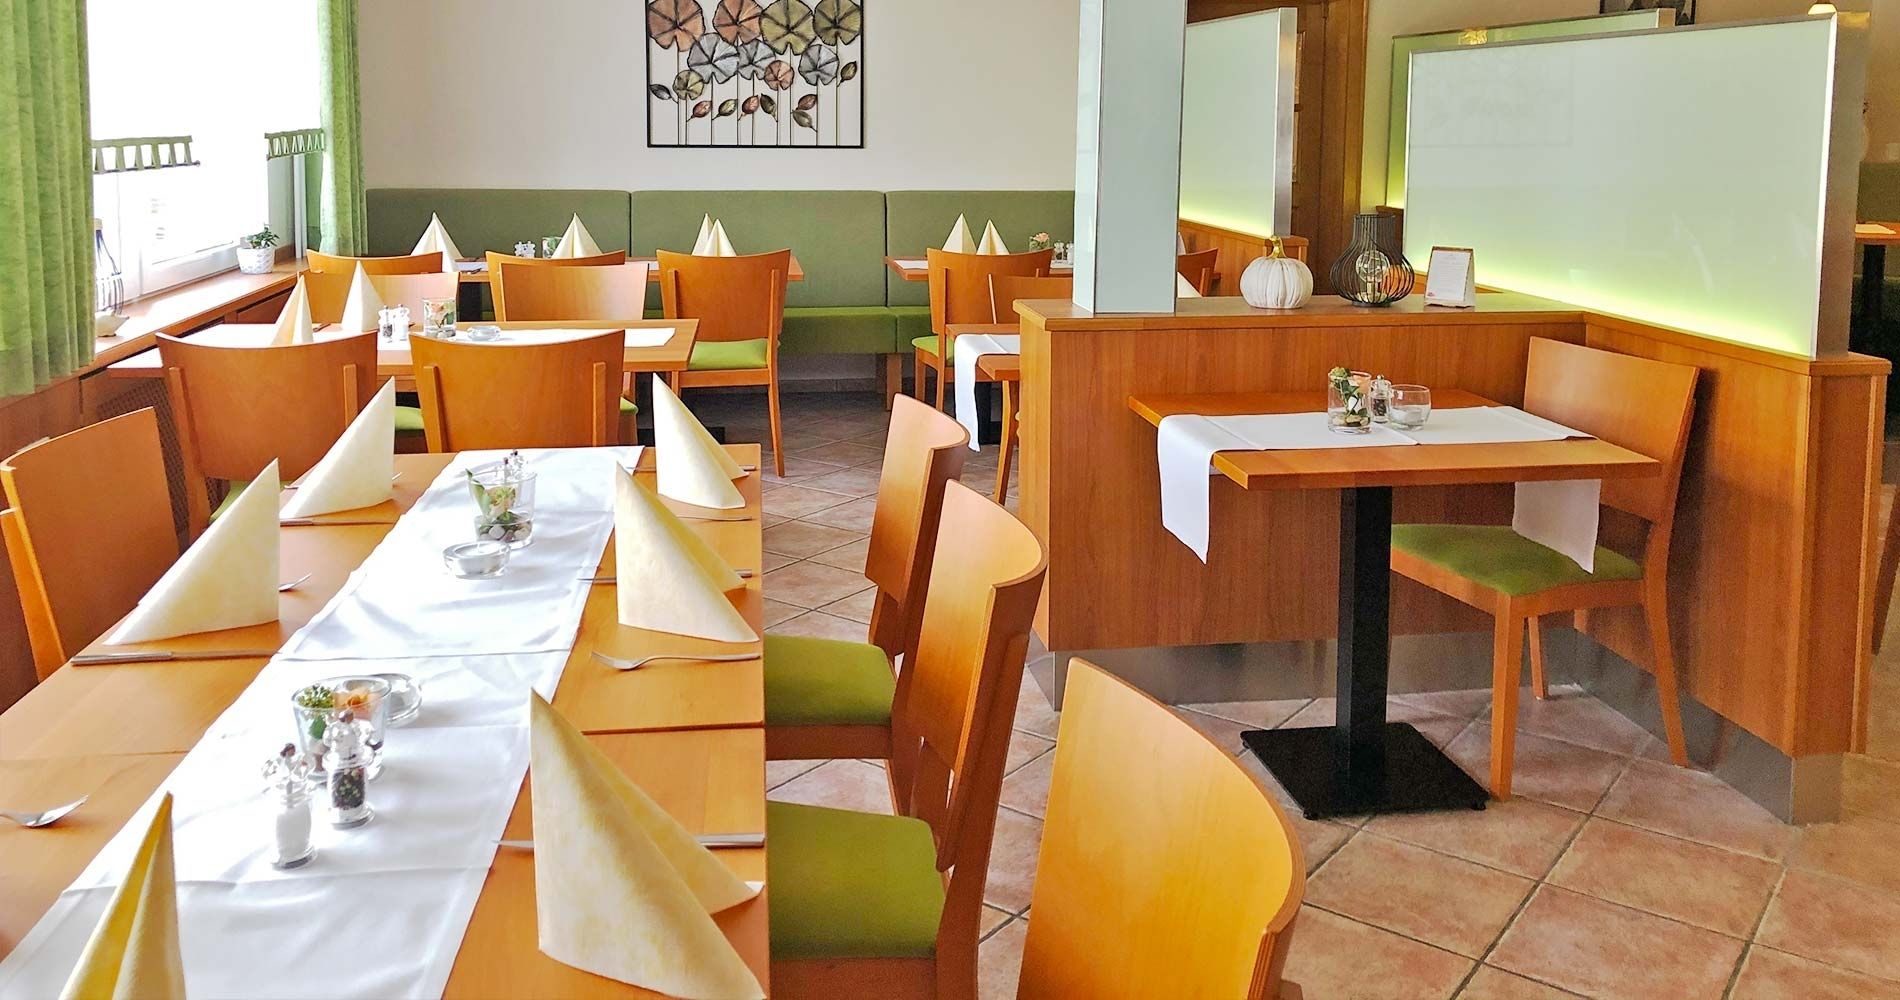 Speisegaststätte Orth - Restaurant Lenderscheid - Lenderscheid aktiv über Speisegaststätte Orth